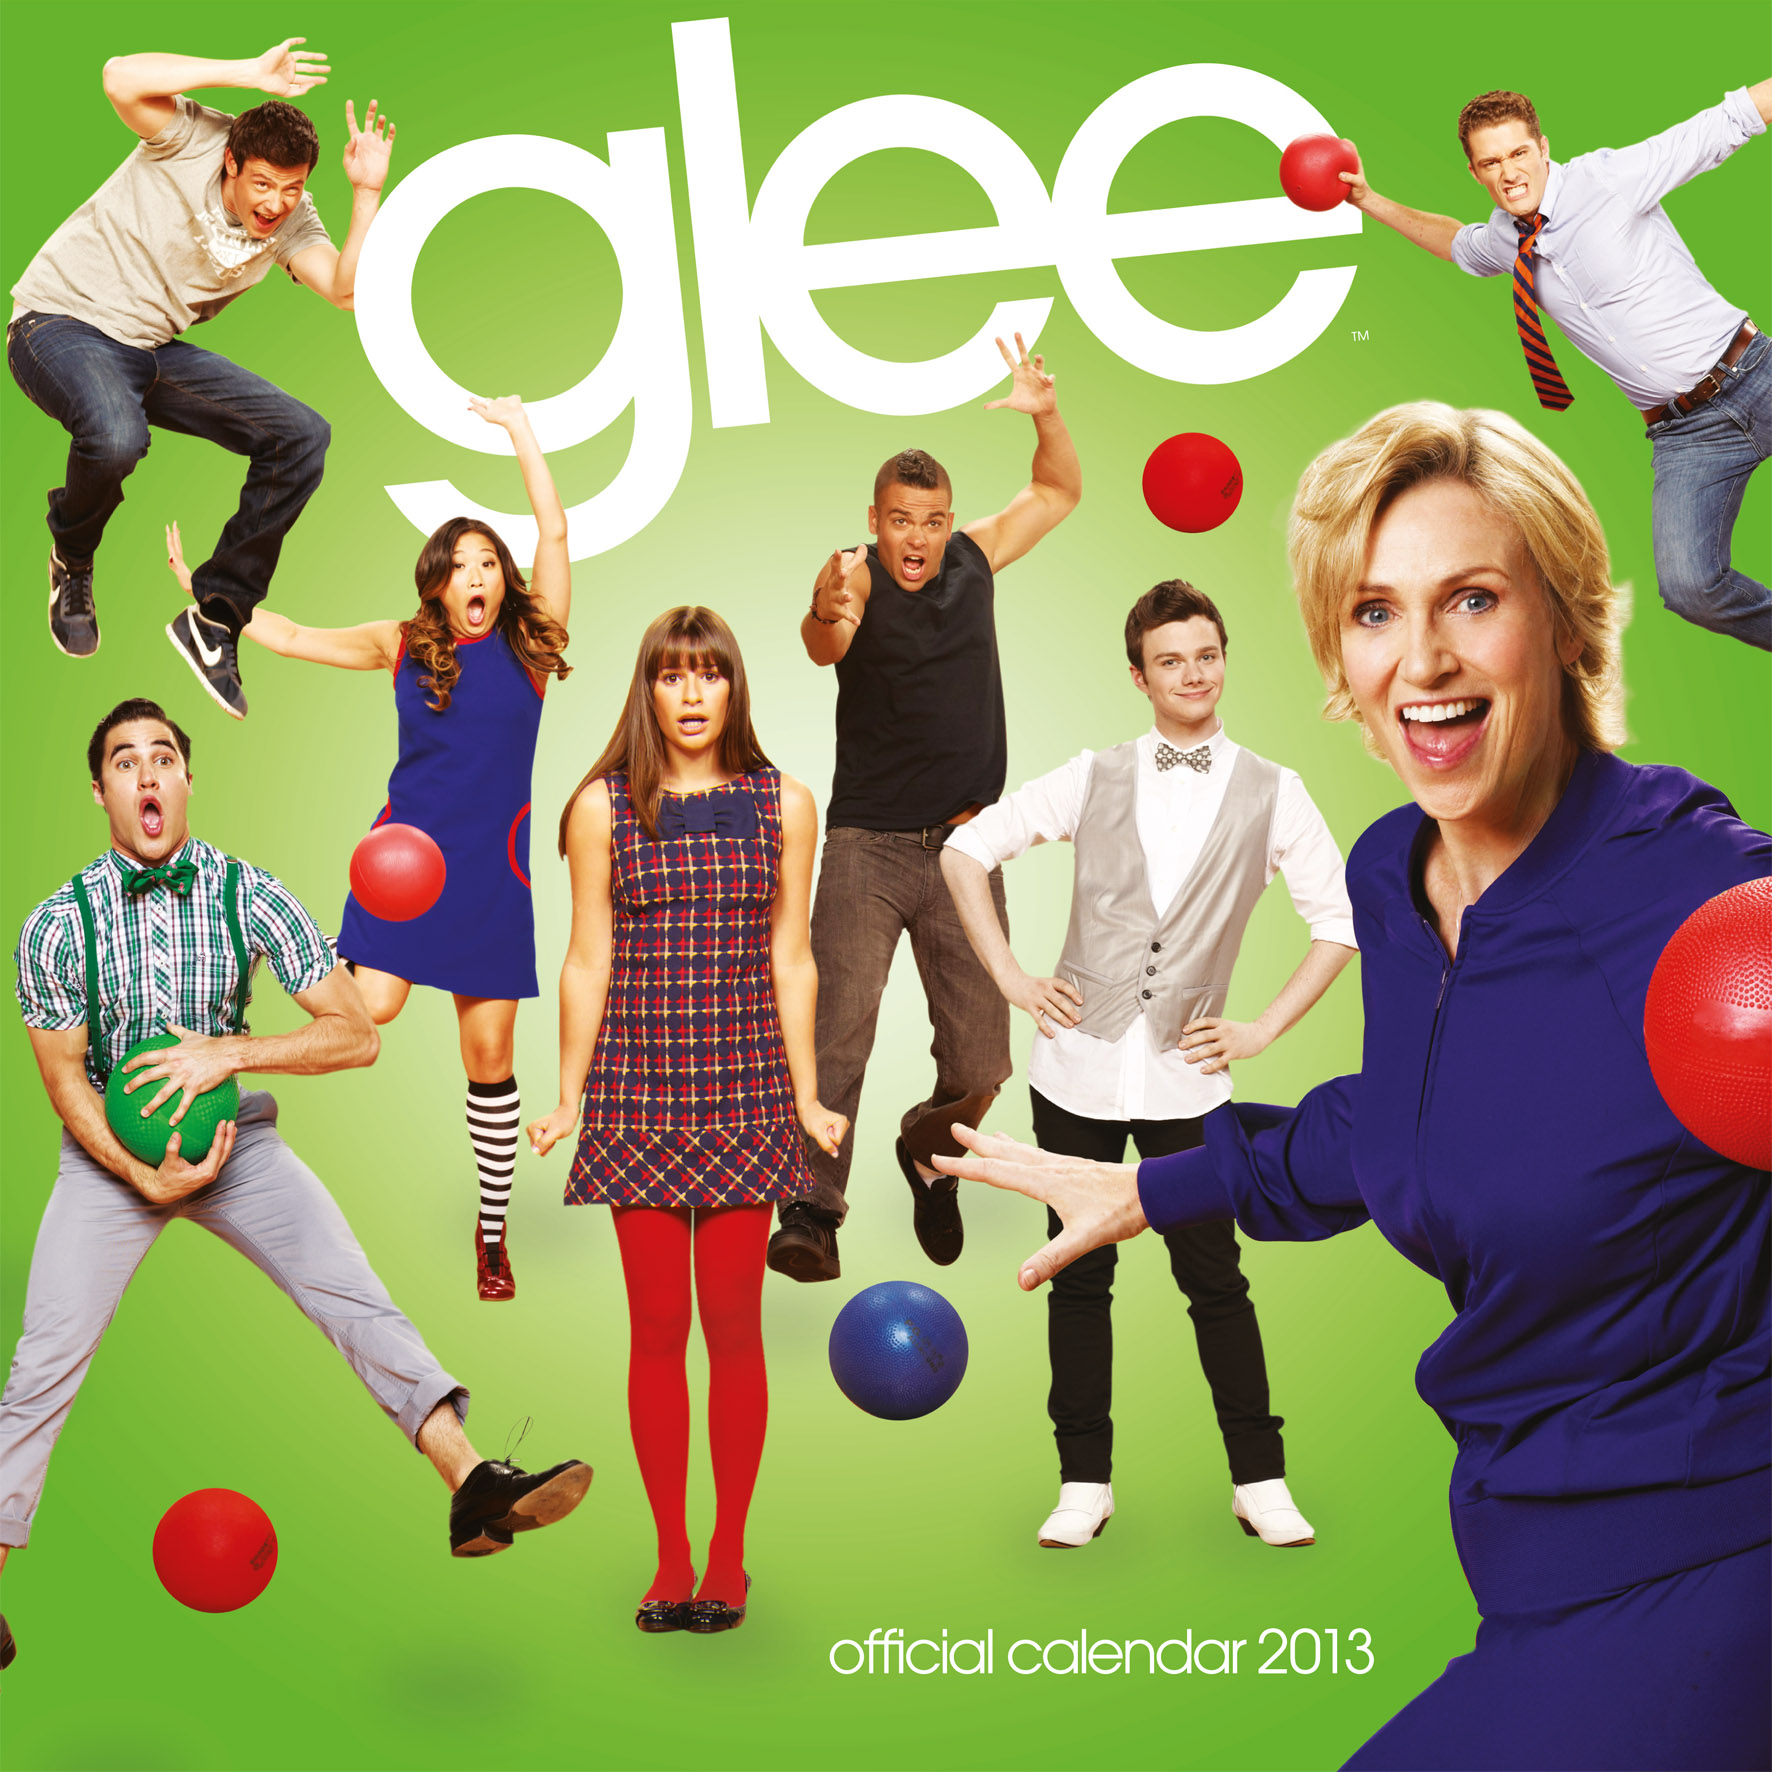 Glee  Wallpaper  TeensWorldBrCom   Flickr